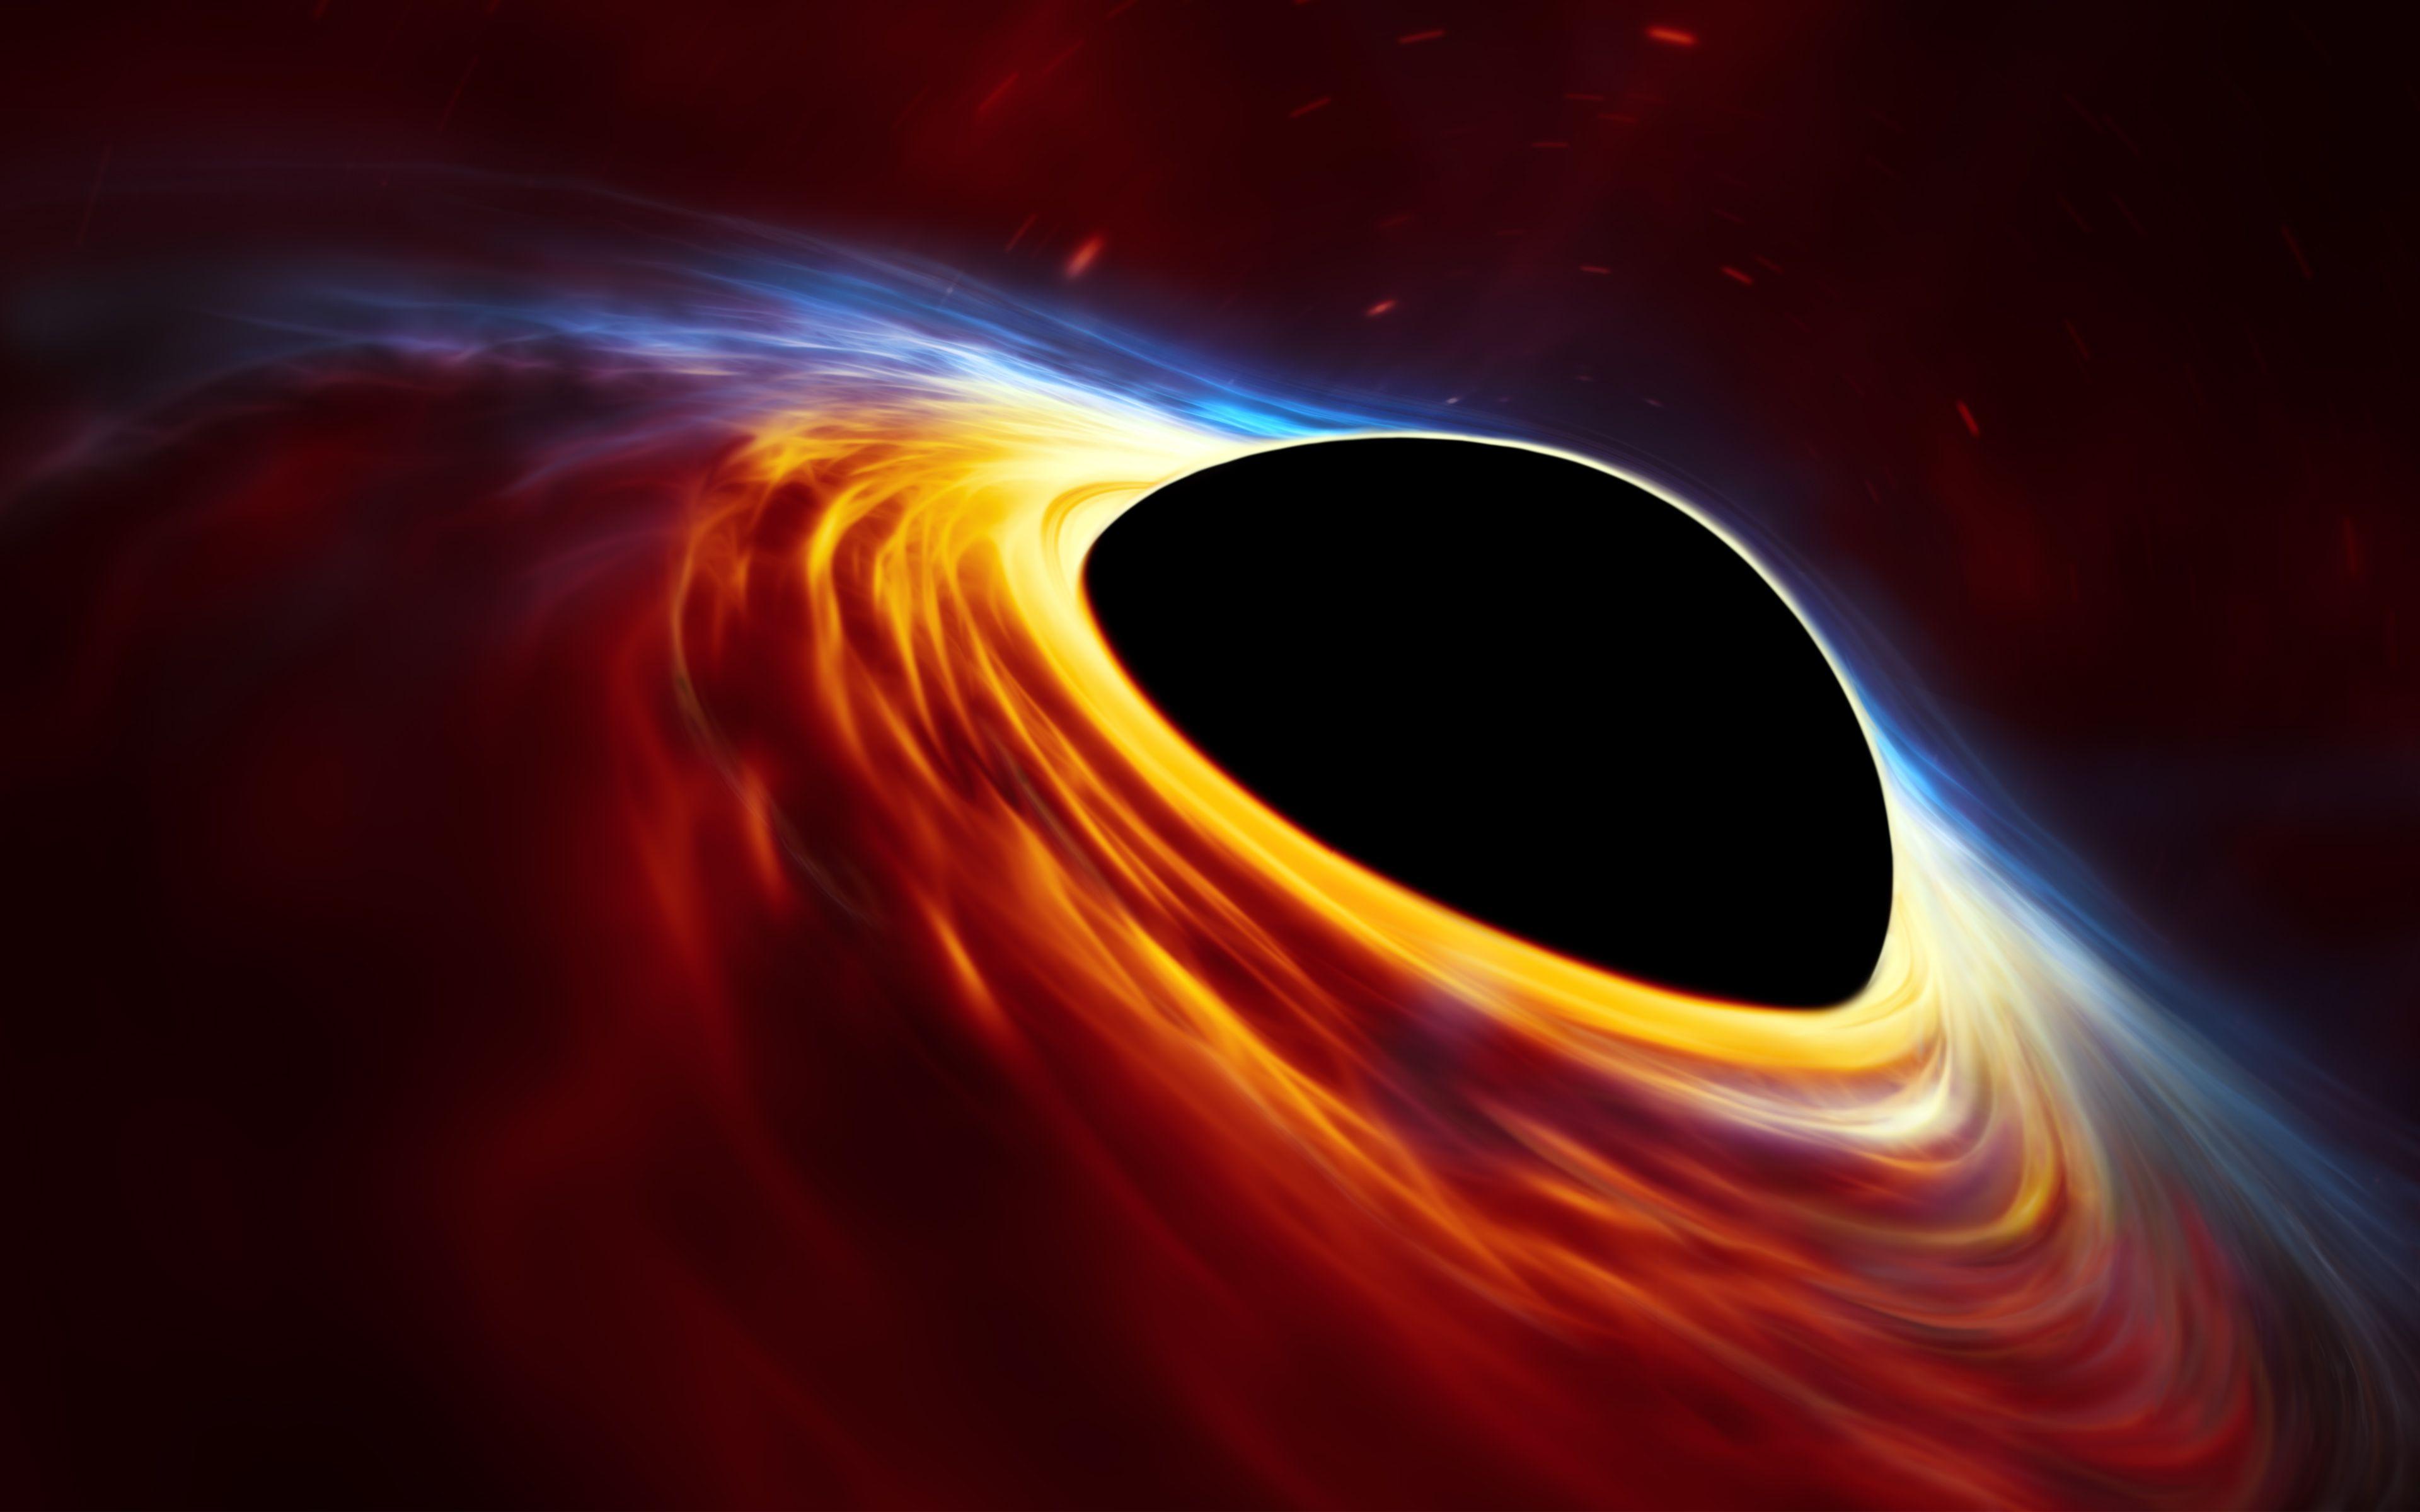 Siêu khối lượng hố đen là điểm đến của những nhà khoa học và nhiếp ảnh gia. Đó là một trong những điều tuyệt vời thể hiện năng lượng khổng lồ cũng như sức mạnh hấp dẫn của hố đen. Hãy xem ảnh liên quan để khám phá những bí mật của siêu khối lượng hố đen.